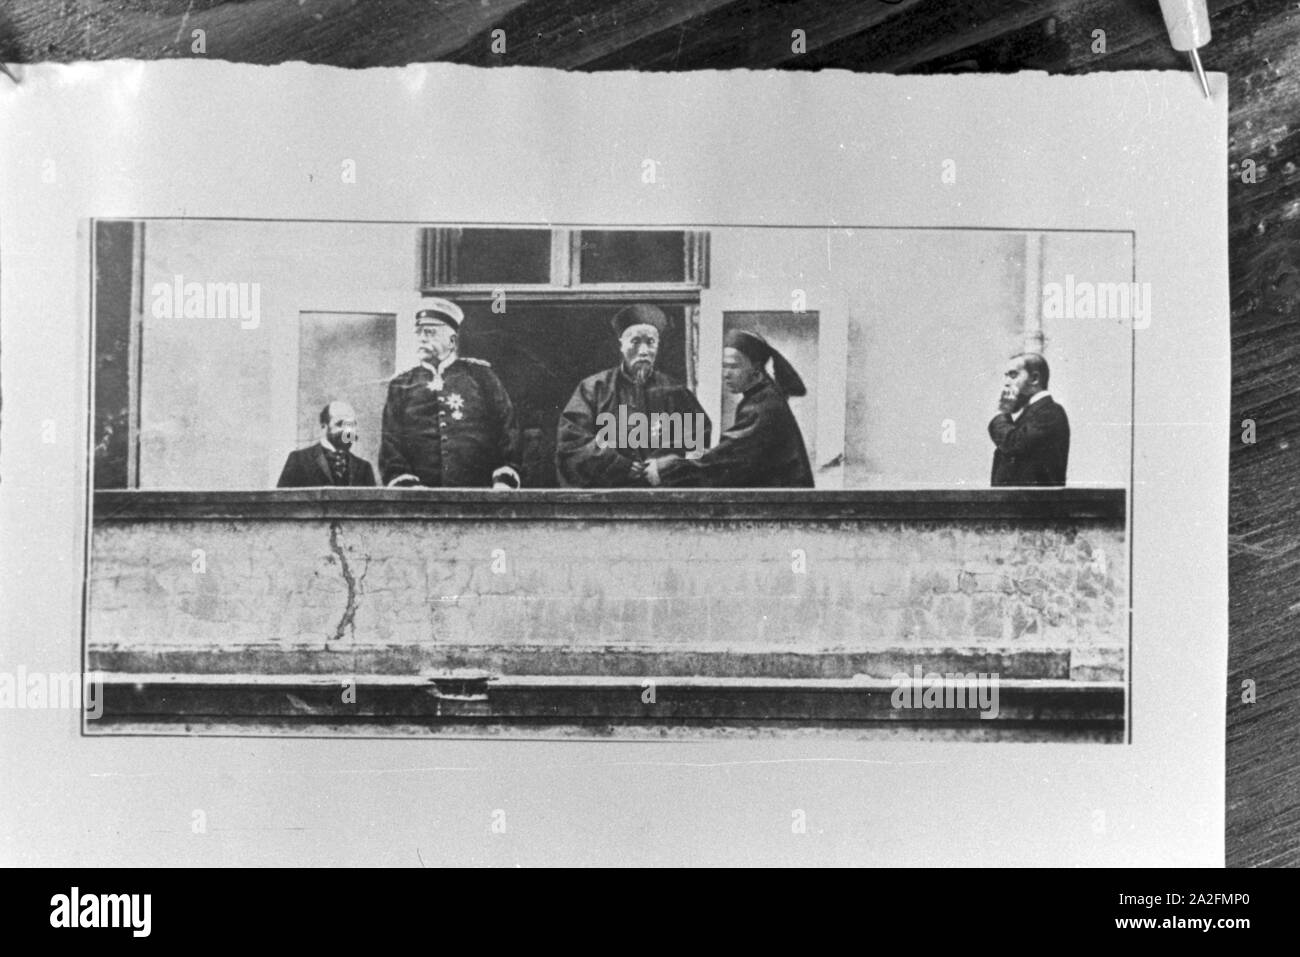 Reproduktionen alter Bilder und Fotografien, Deutschland 1930er Jahre. Reproduktionen von alten Bildern und Fotografien, Deutschland 1930. Stockfoto